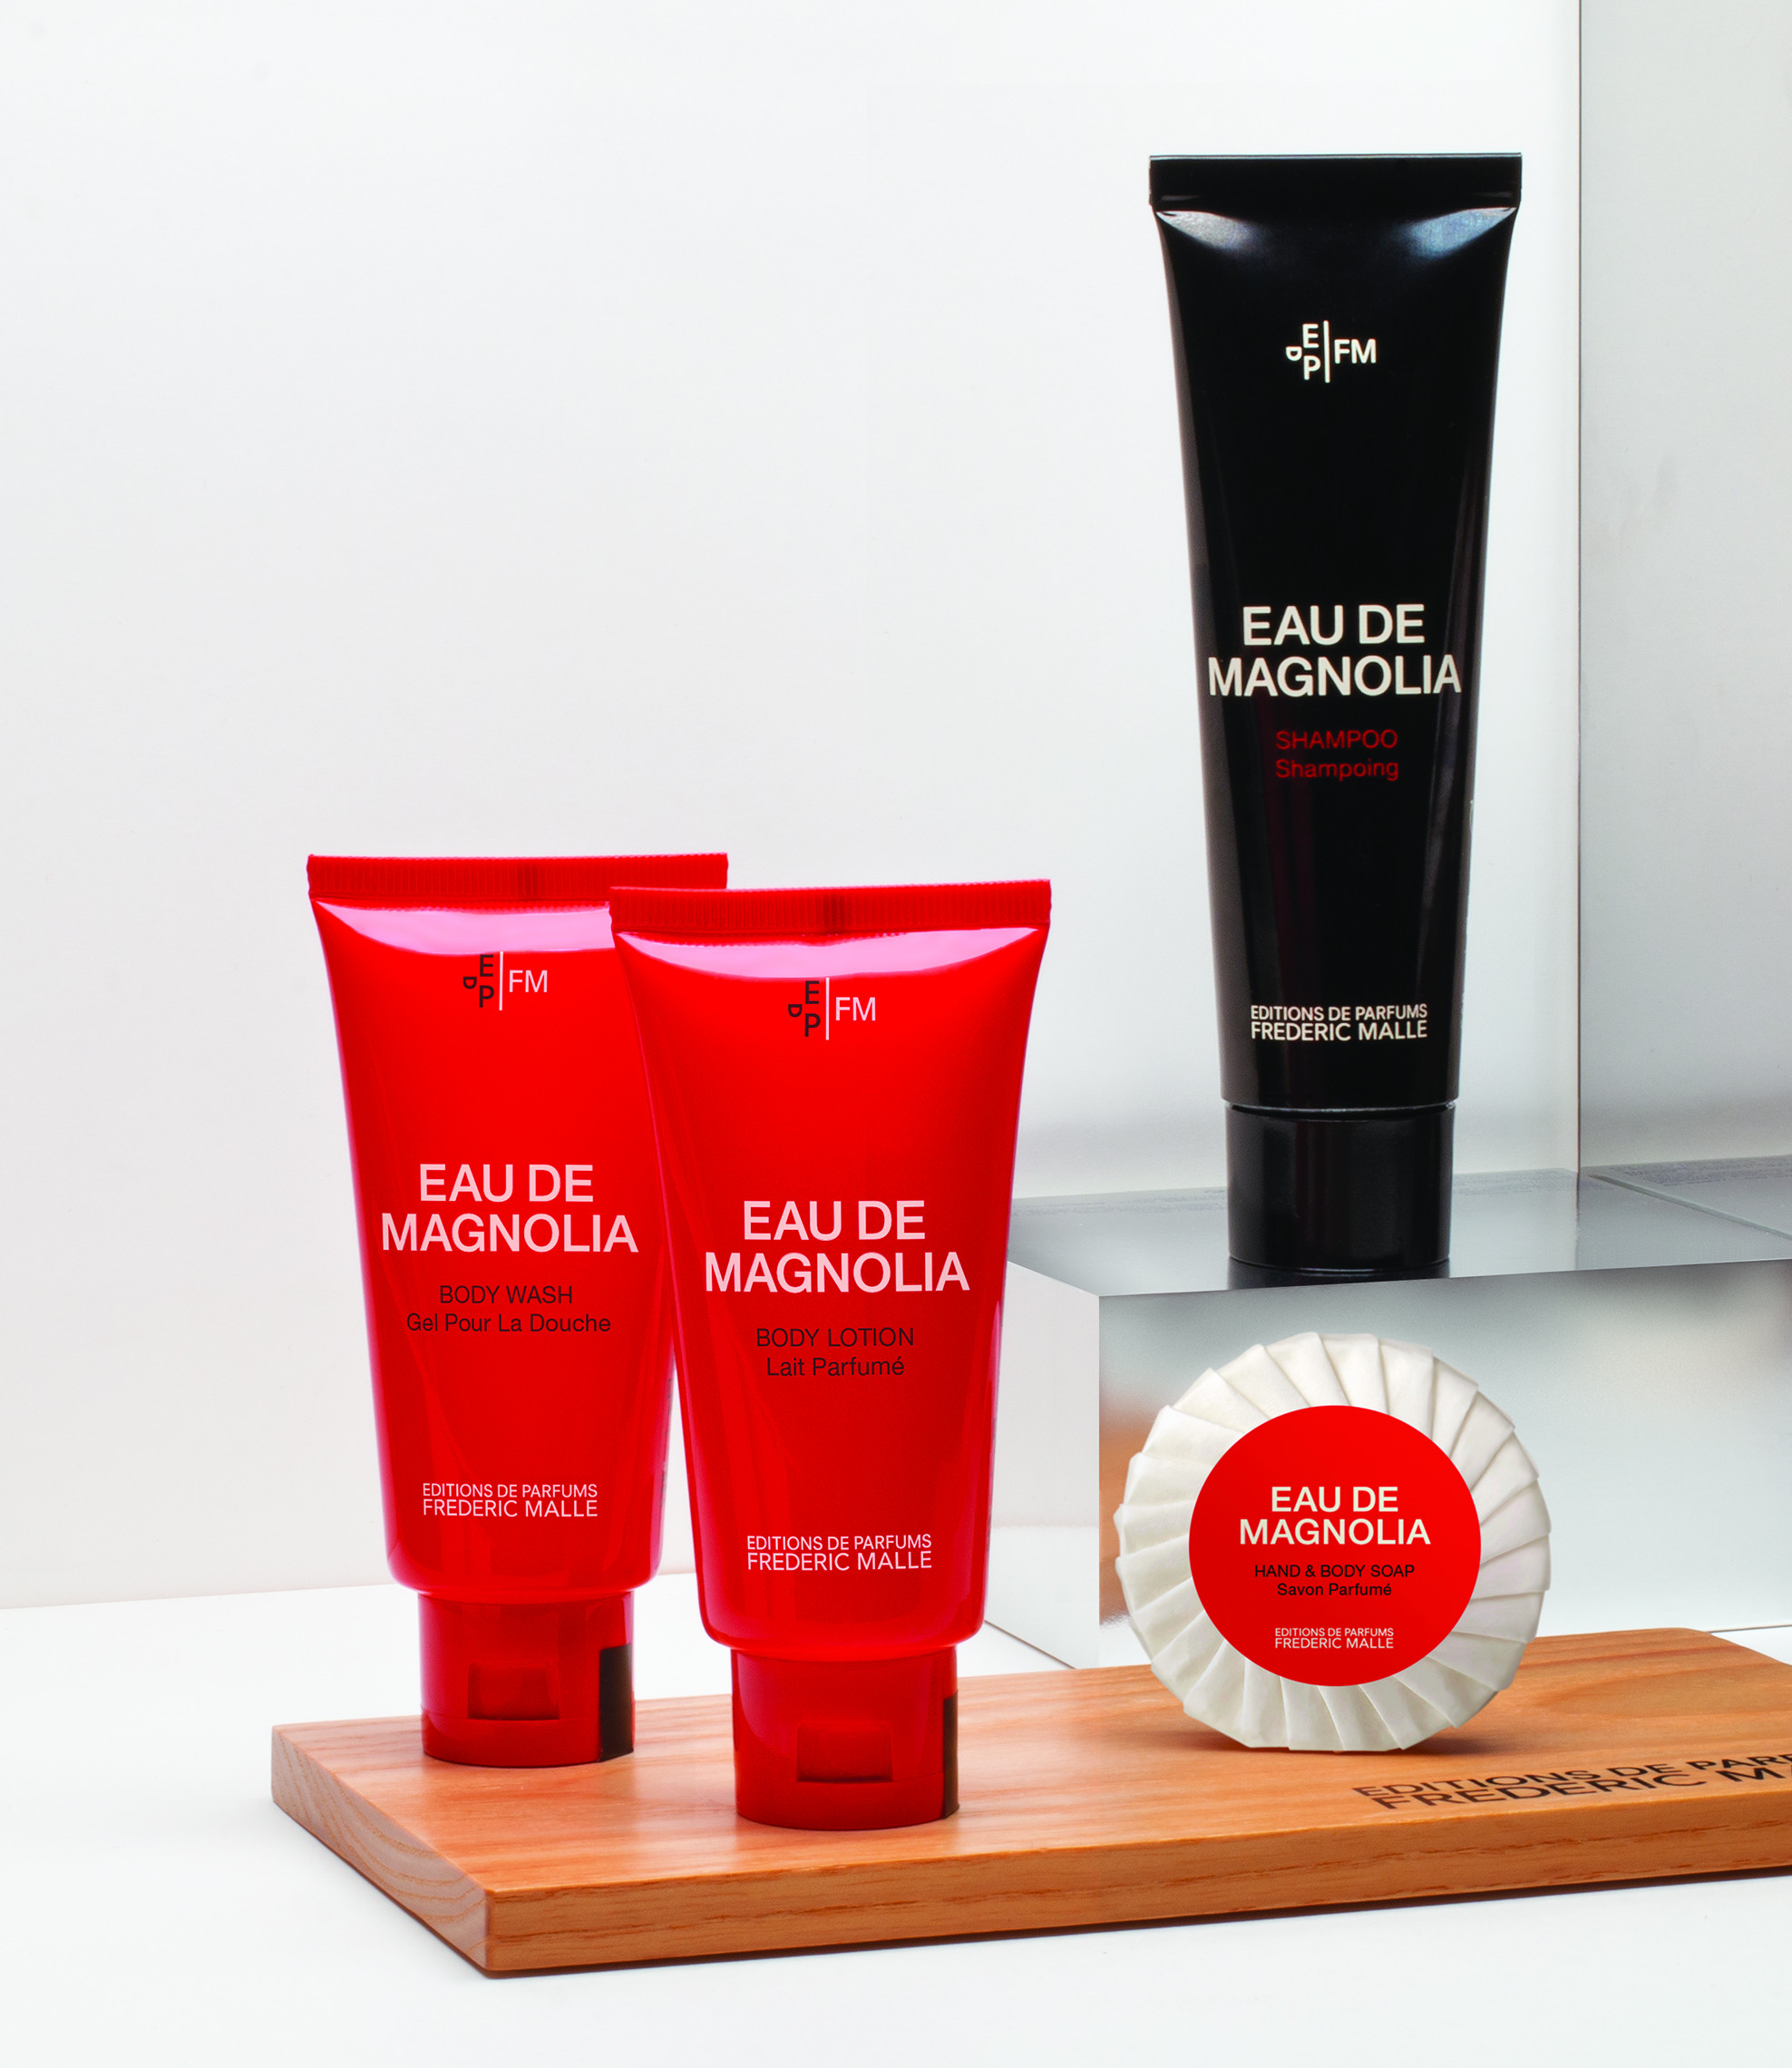 Groupe GM lanza una nueva línea de productos de cortesía en colaboración con Editions de Parfums Frédéric Malle